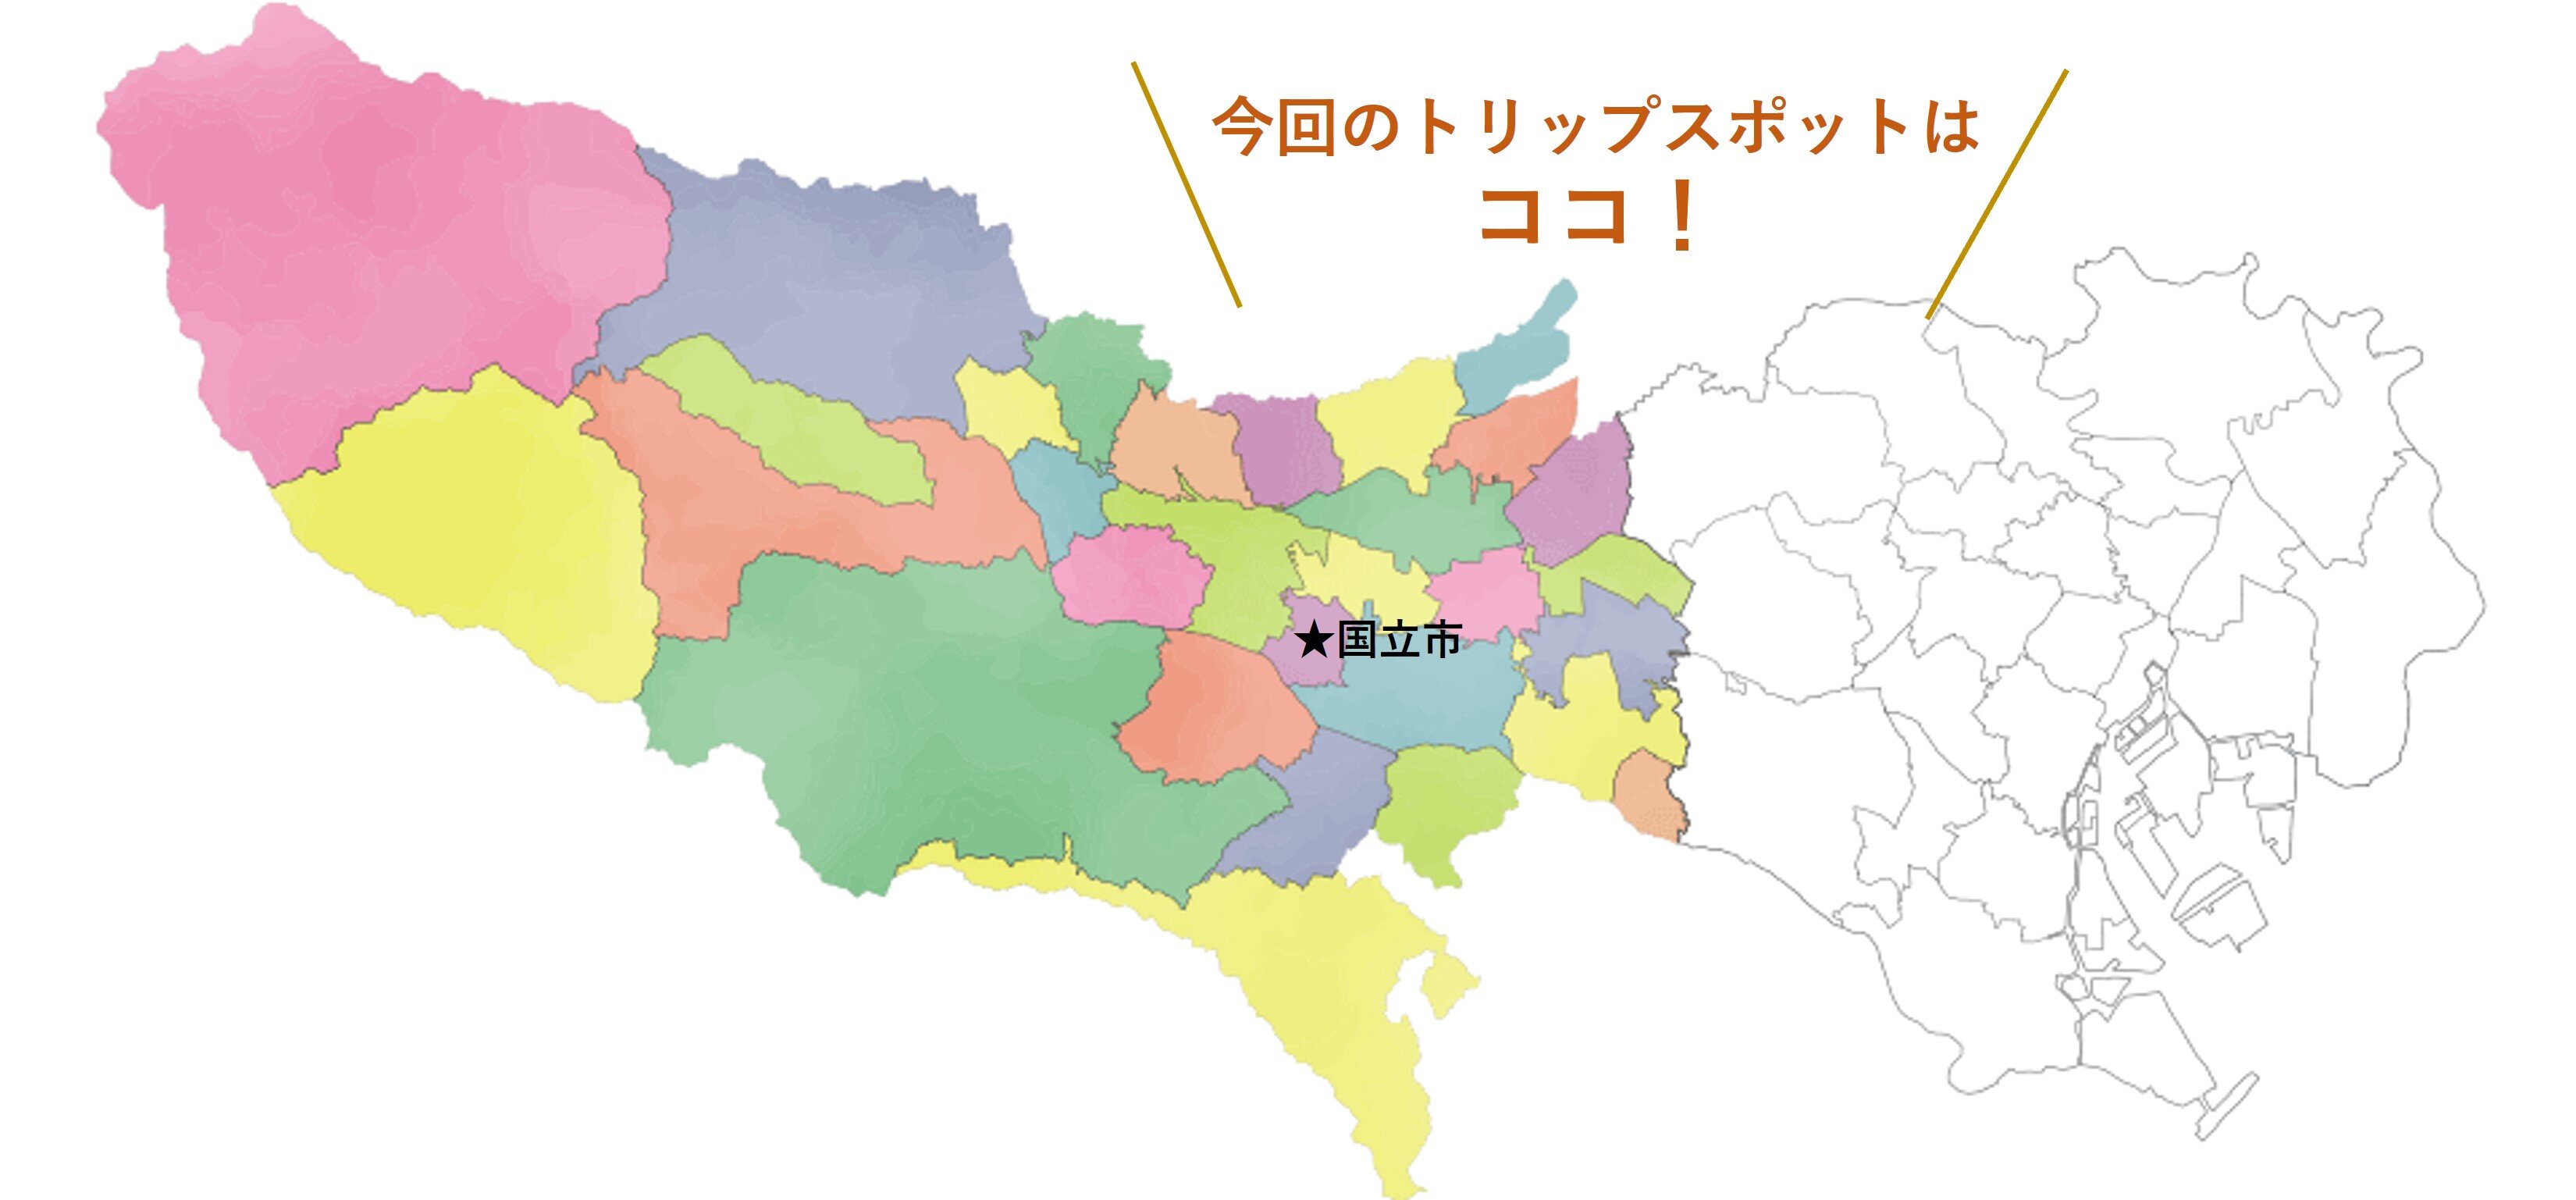 tama-kunitachi-map.jpg